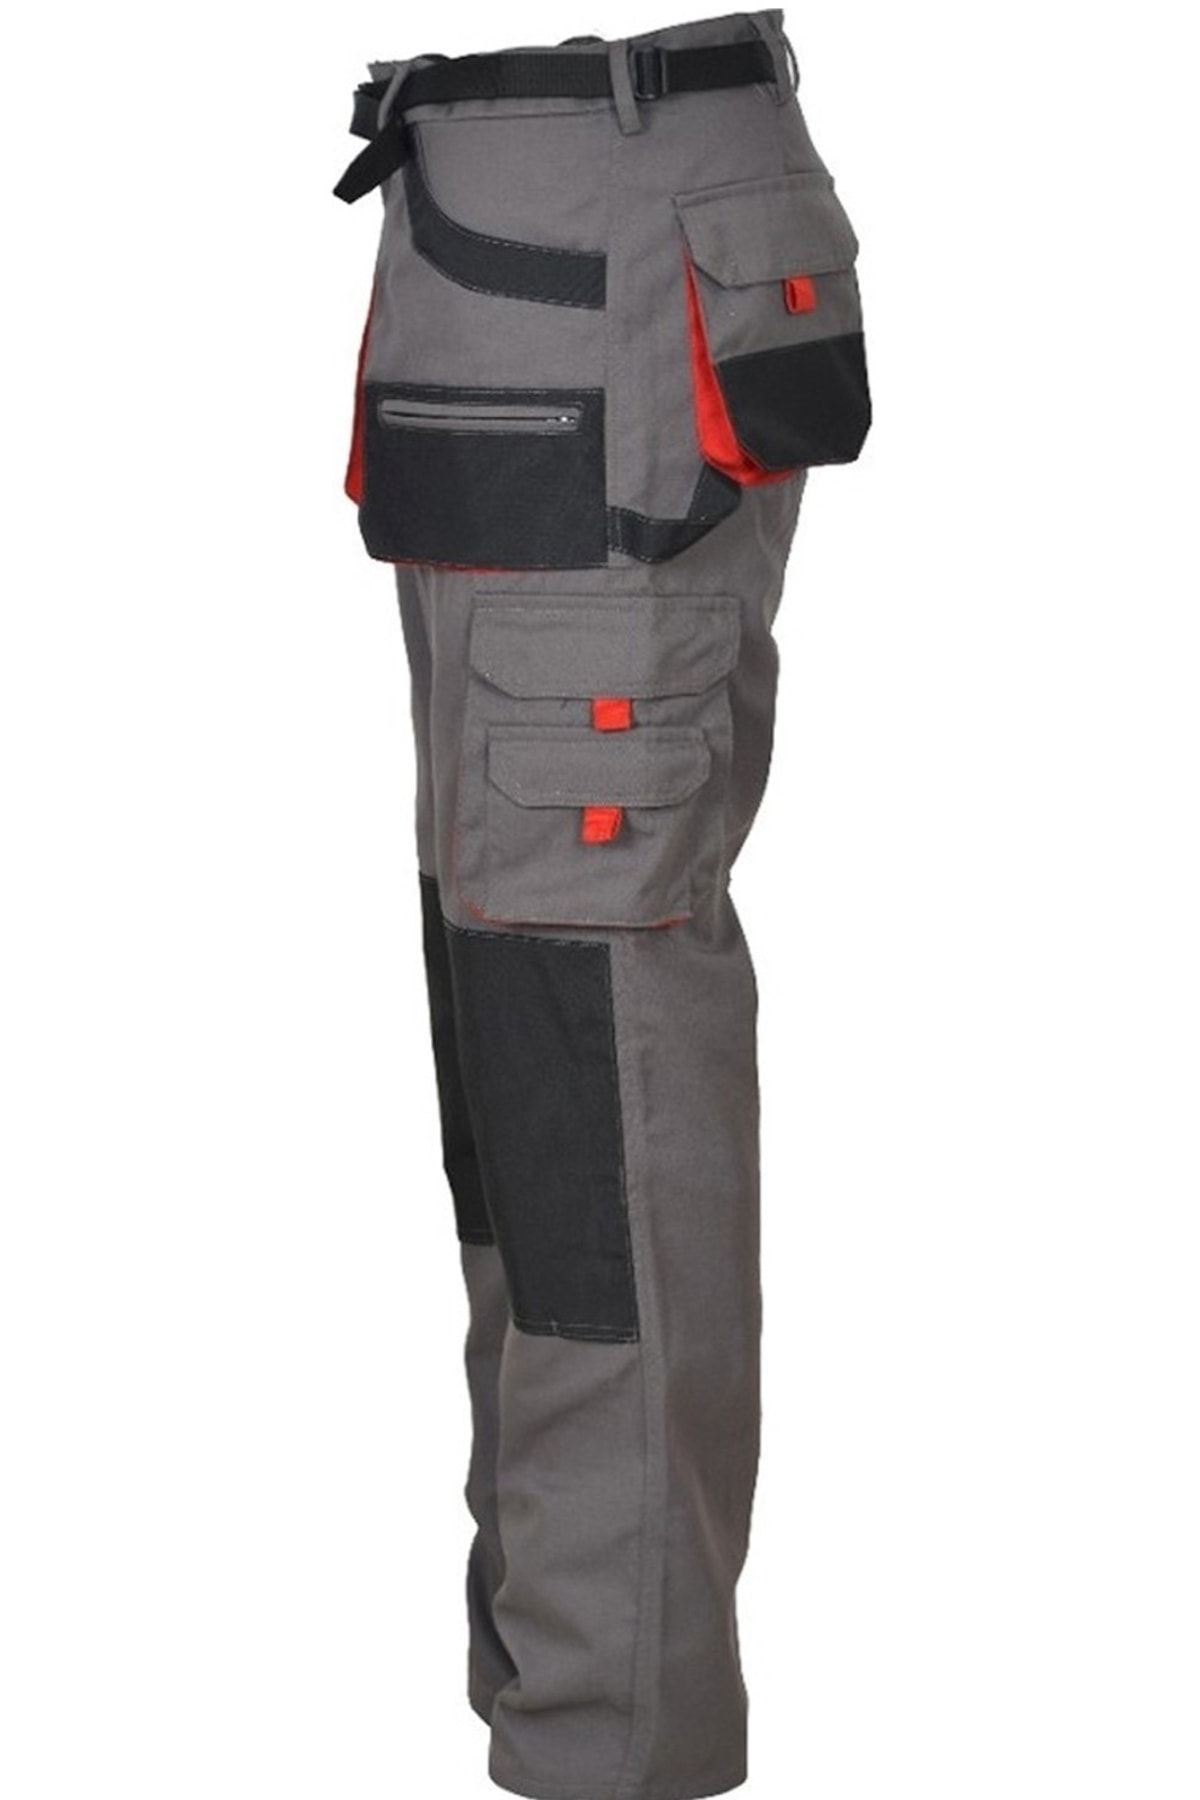 Ysf WorkWear İş Market Korumasız Motor Kurye Kargo Pantolon - Diz Takviyeli Füme Özel Üretim Erkek Pantolonu